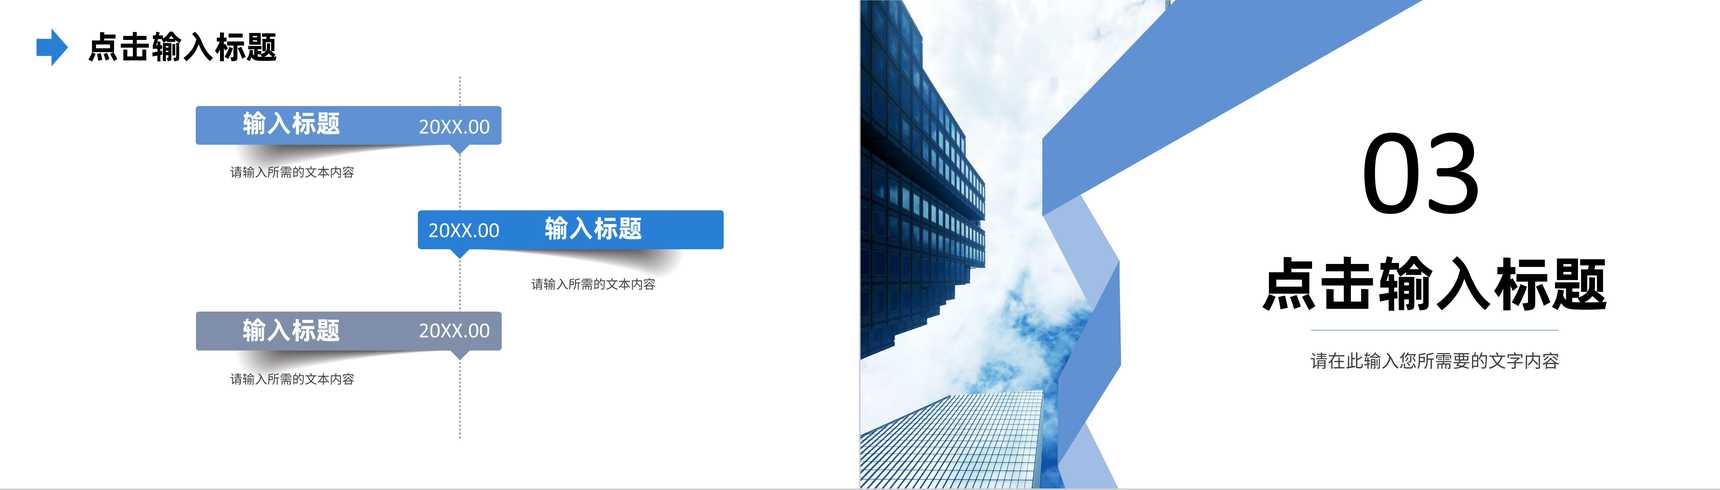 蓝色大气公司介绍产品经营项目宣传合作洽谈方案PPT模板-7